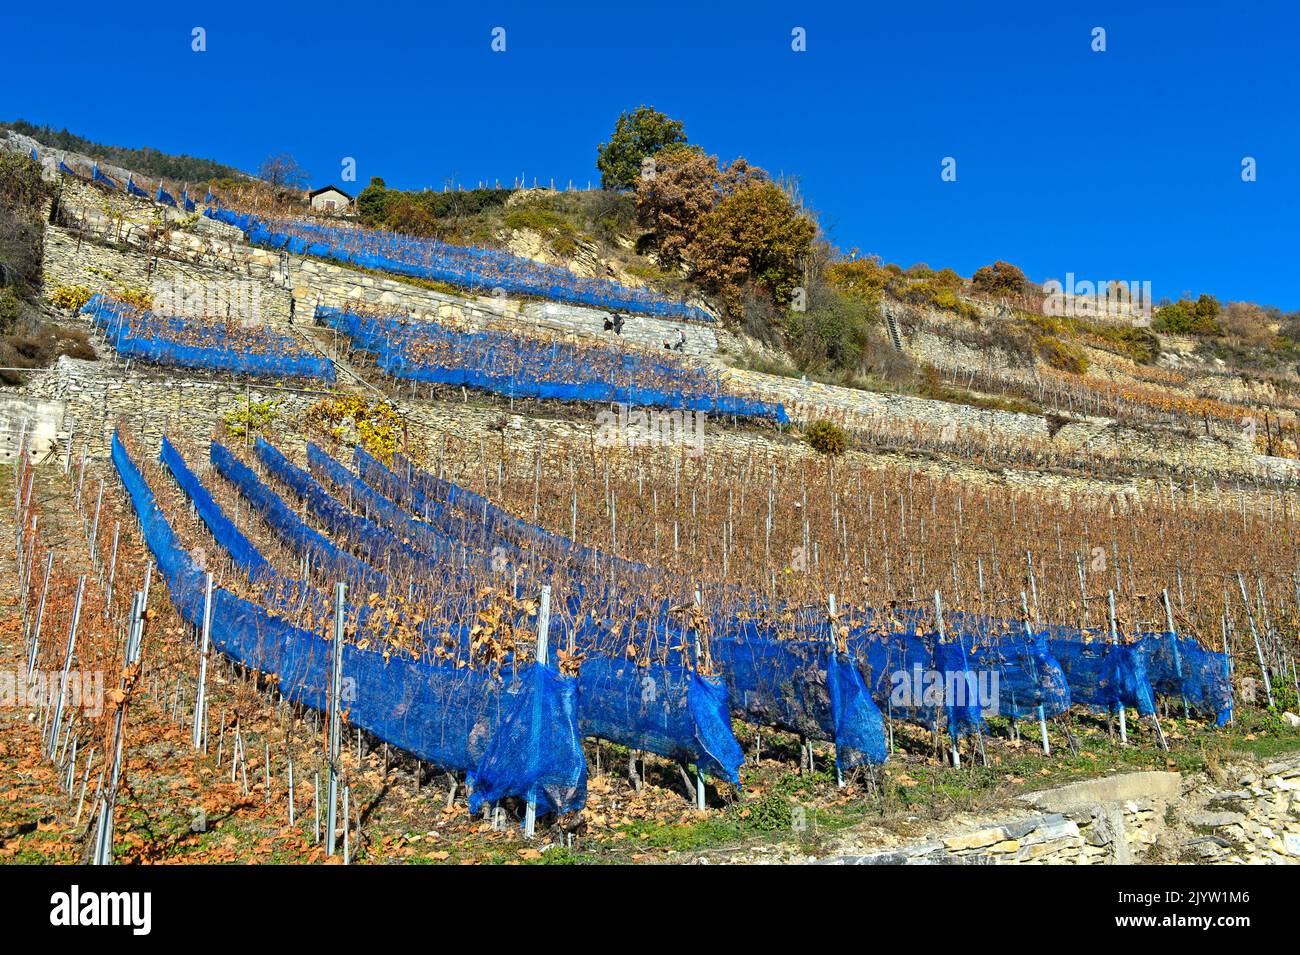 Reti di protezione blu contro i danni agli uccelli in un vigneto della regione vinicola di Vetroz, Vetroz, Vallese, Svizzera Foto Stock